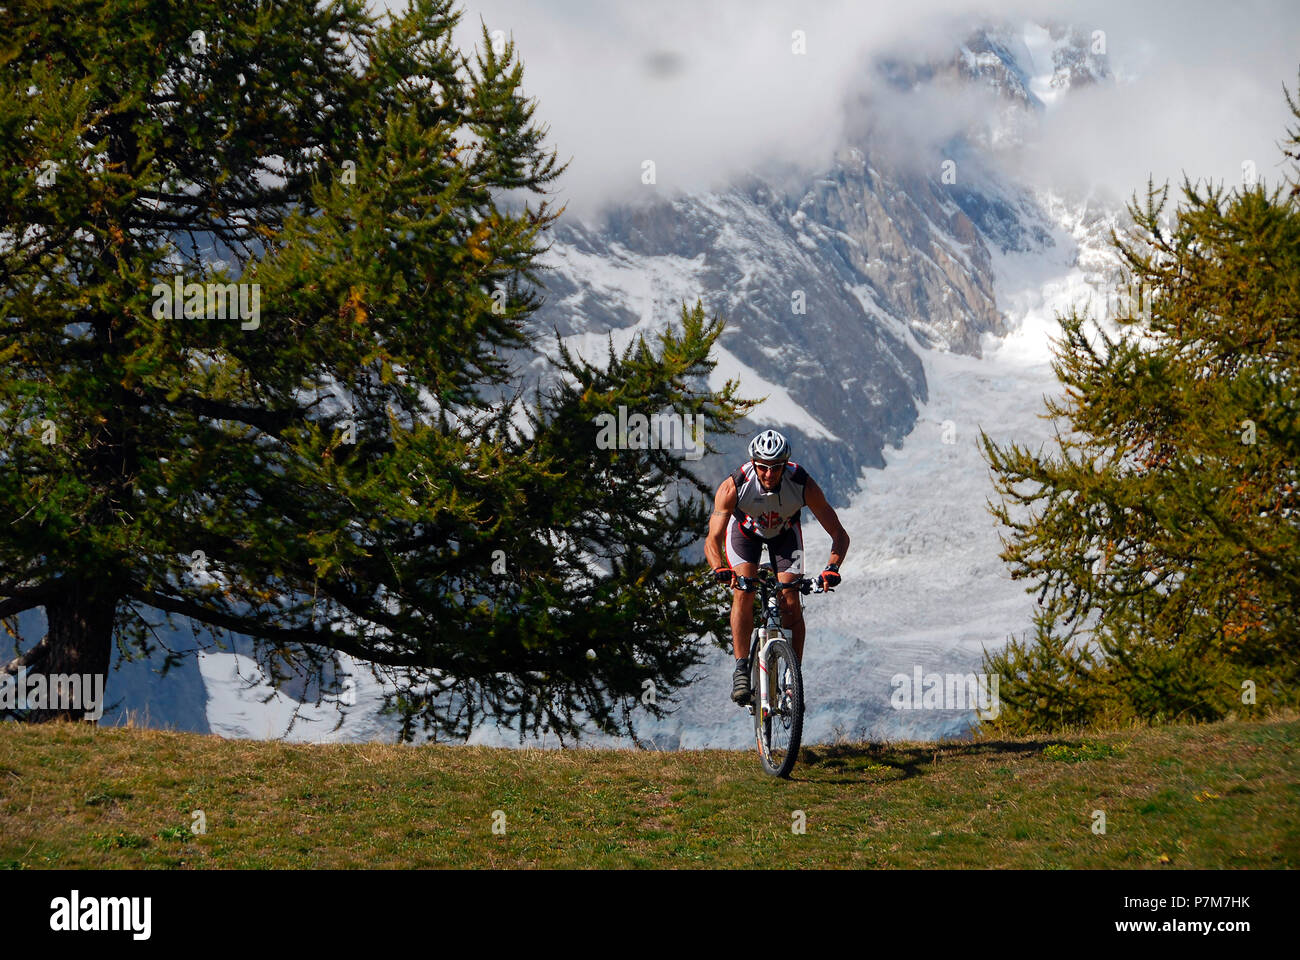 MTB Biker avec Glacier Brenva (mont Blanc) sur le contexte, Val Ferret, vallée d'aoste, Italie Banque D'Images